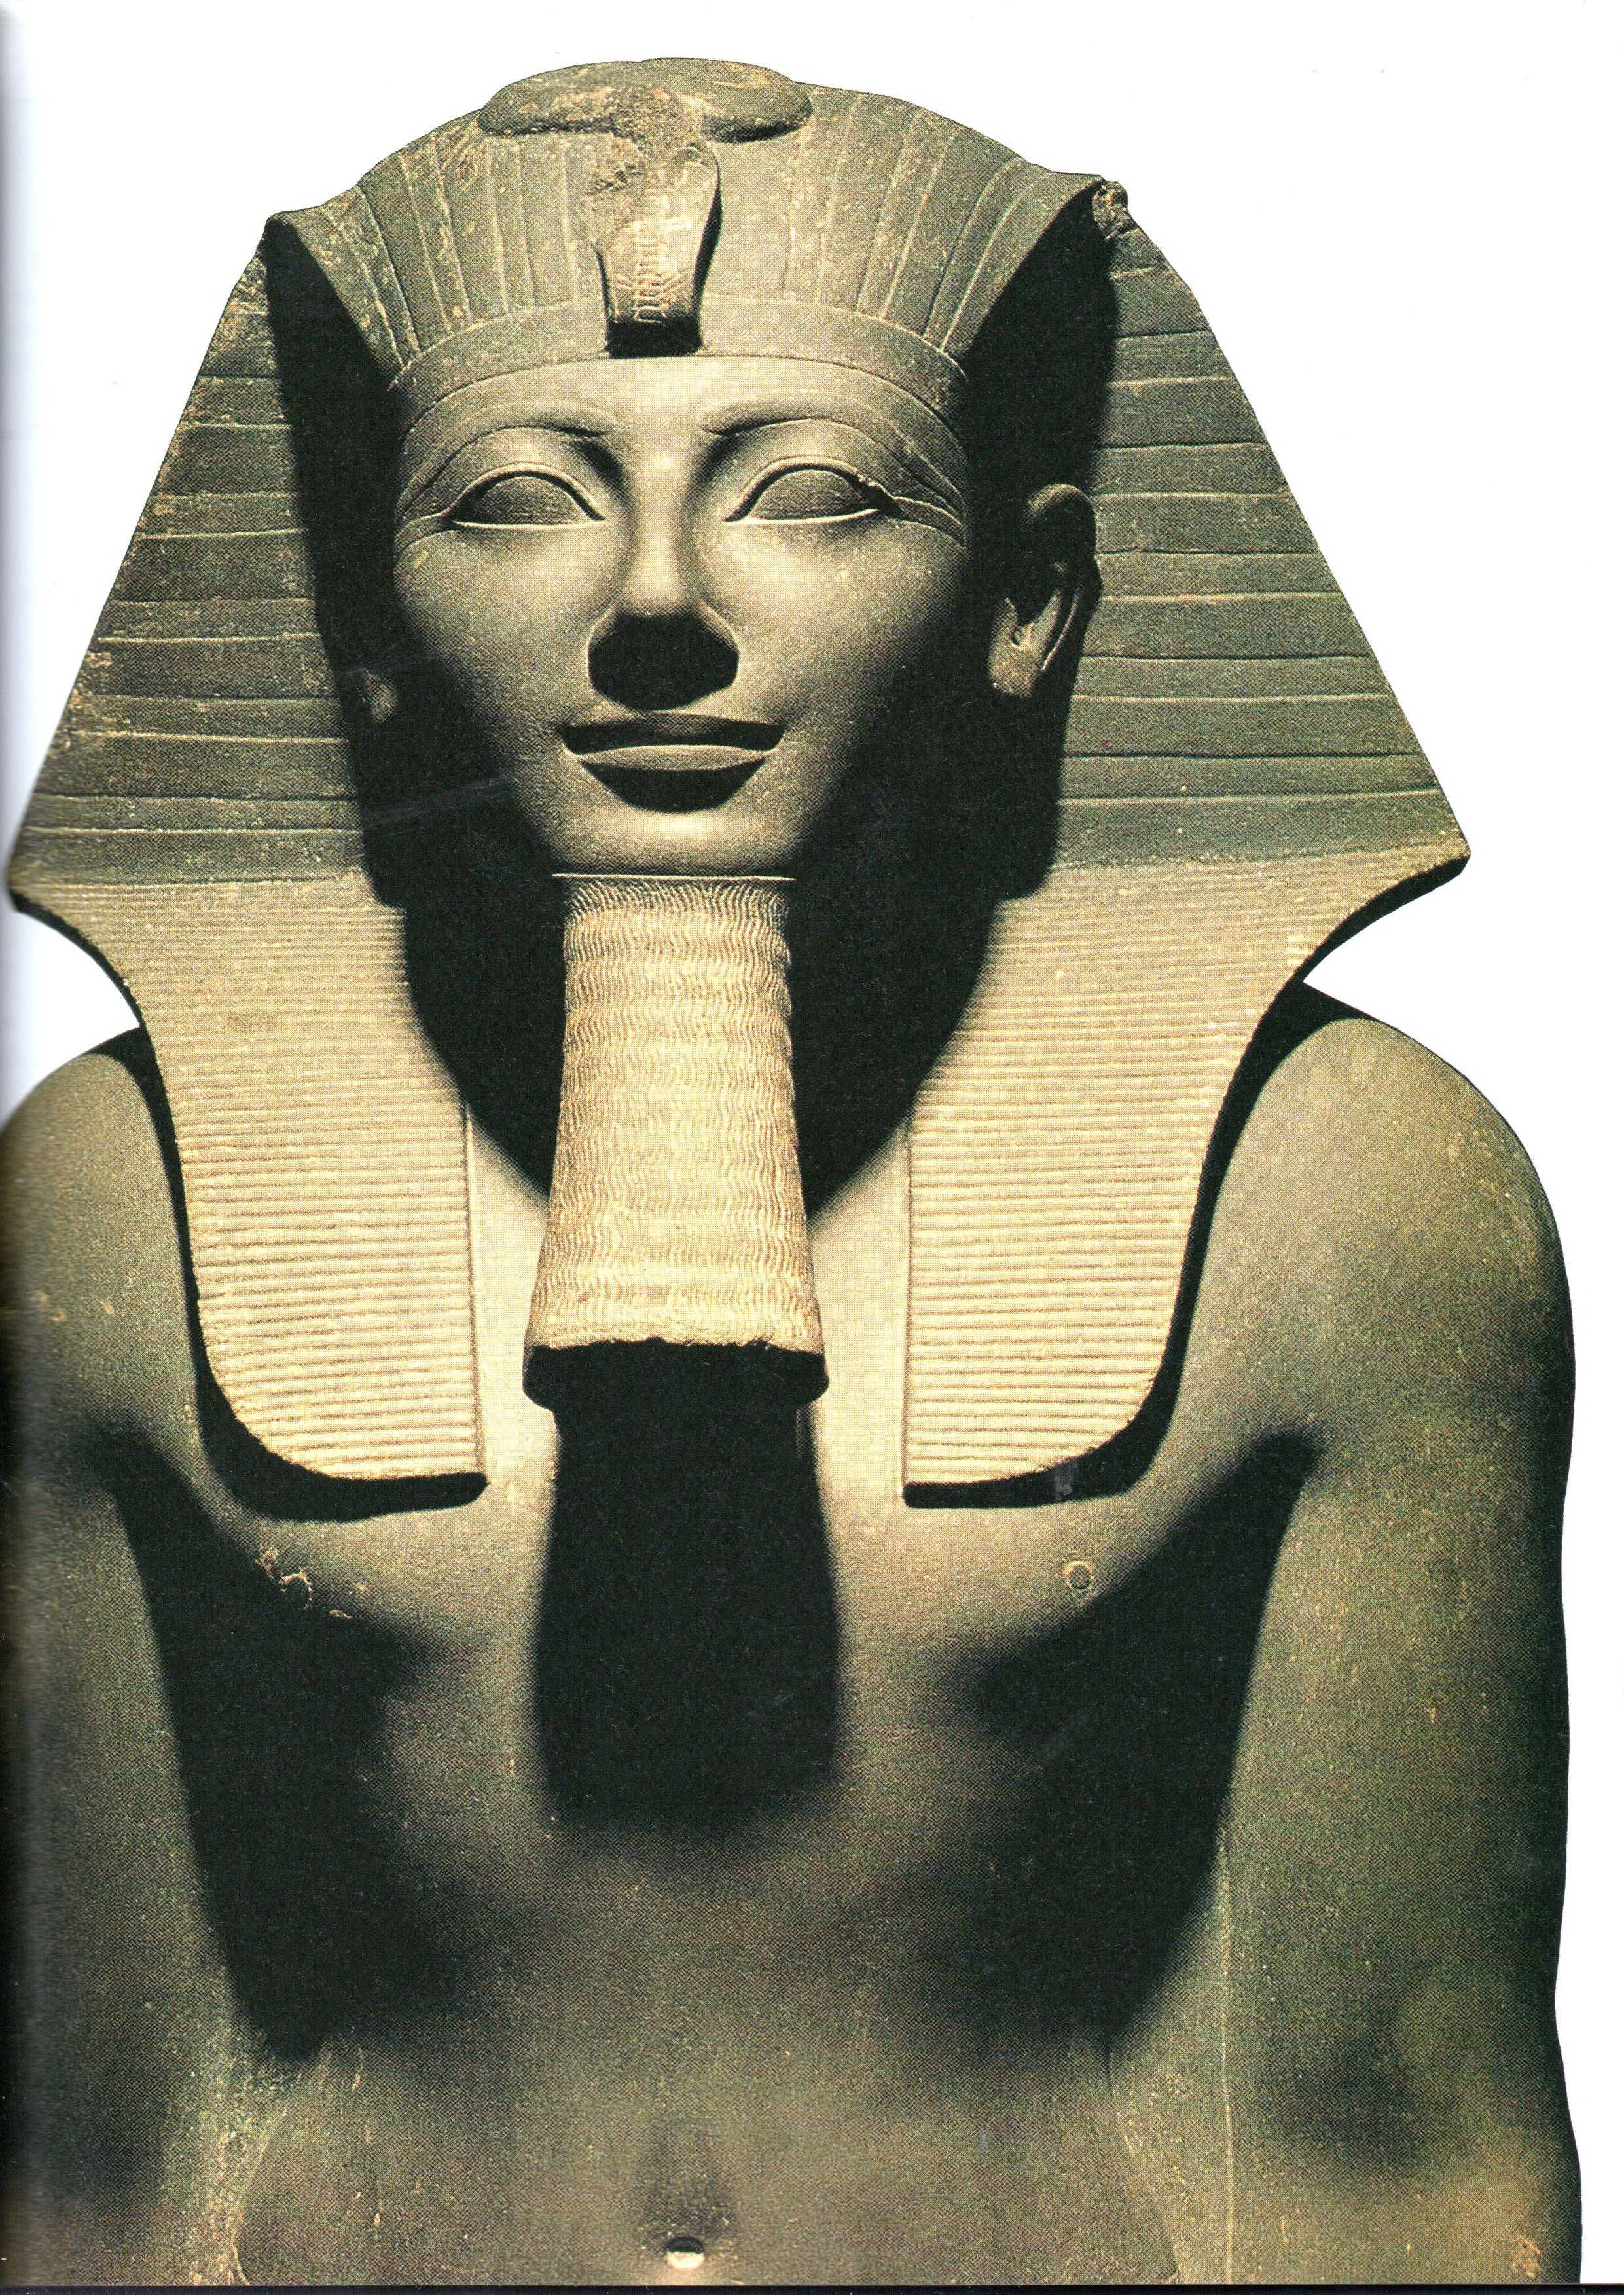 Starożytny Egipt - W dolinie Nilu Alberto Siliotti